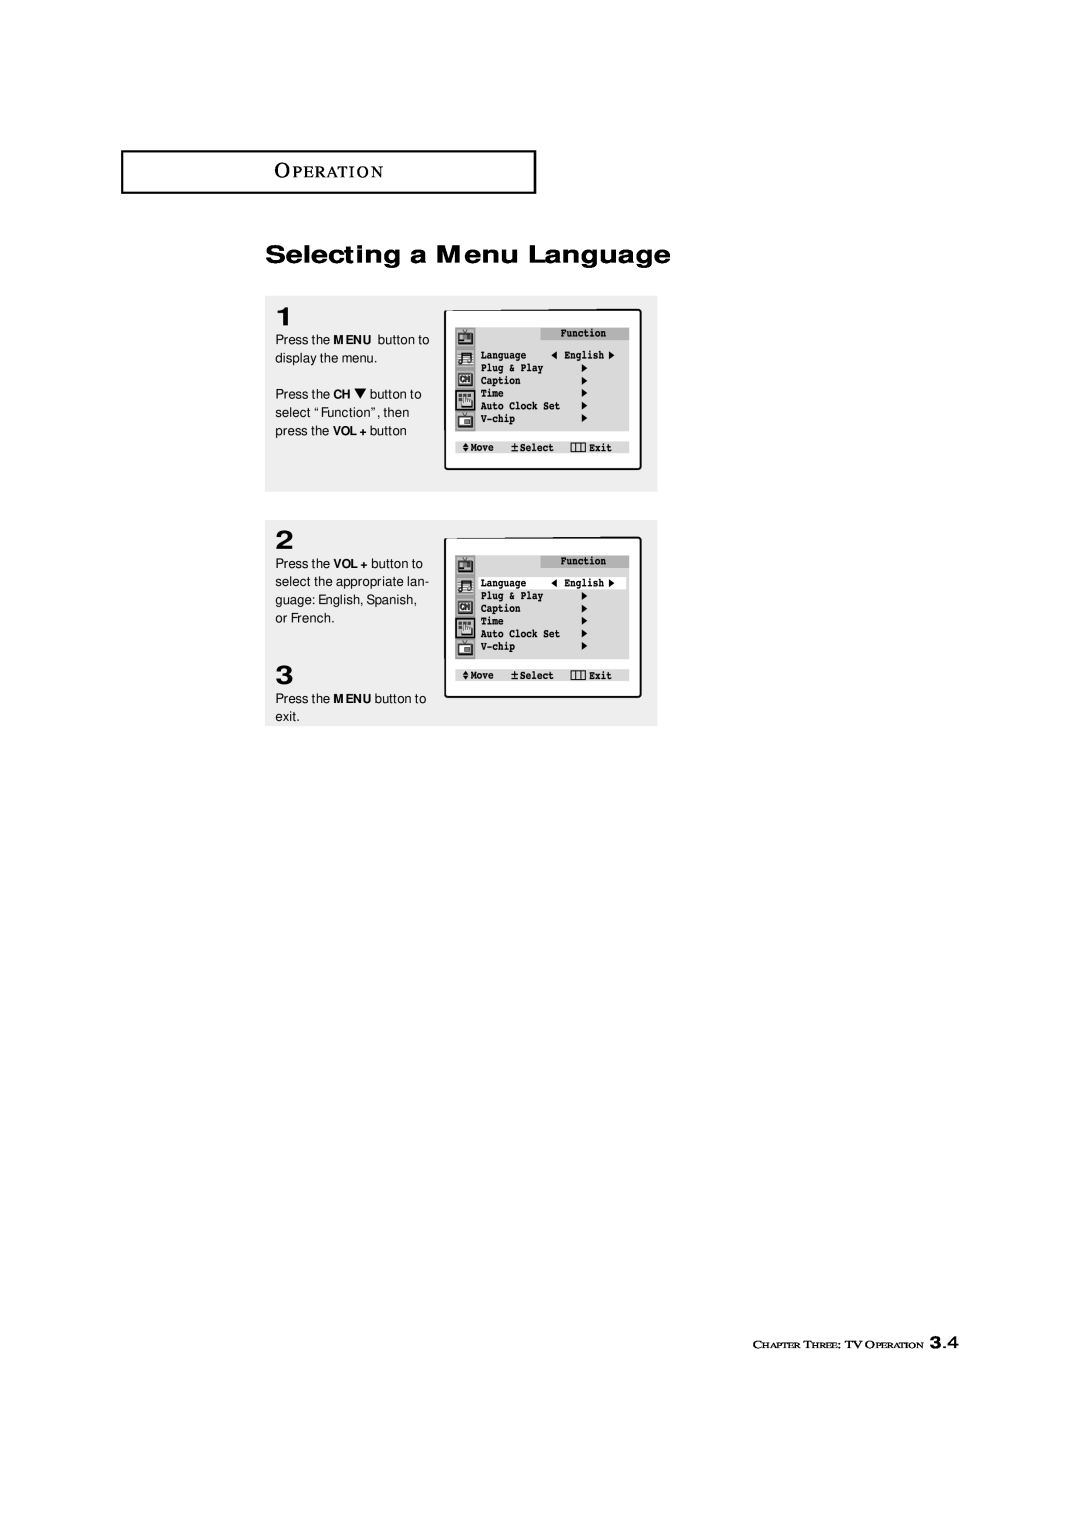 Samsung TXM 3098WHF, TXM 2796HF Selecting a Menu Language, O P E R At I O N, Press the MENU button to display the menu 